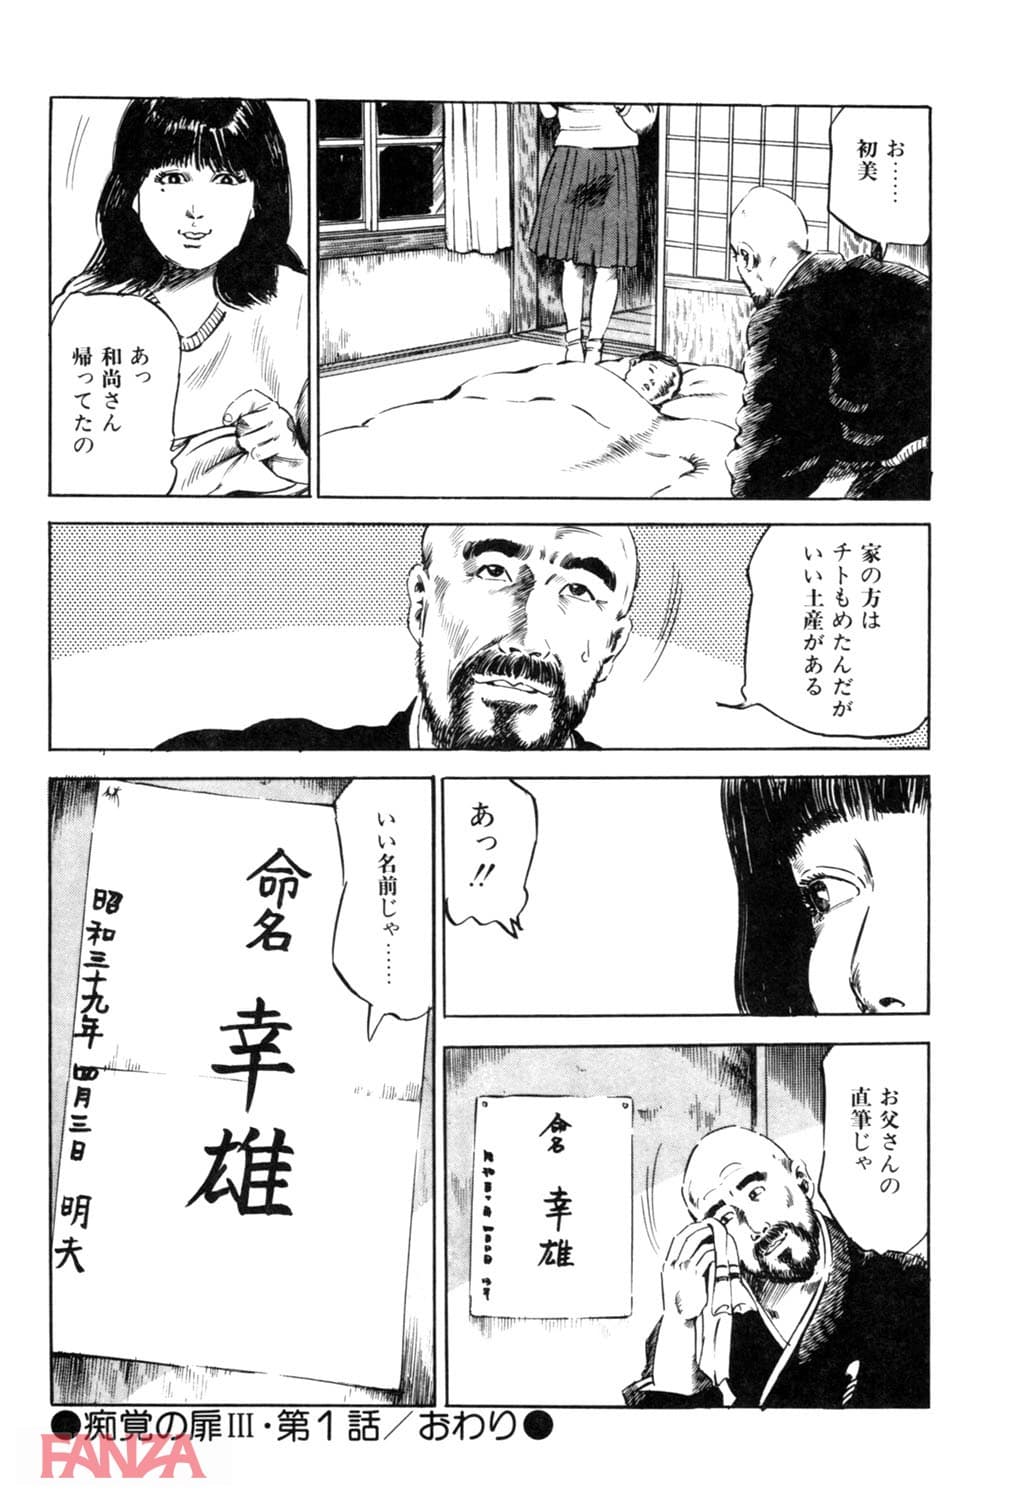 【エロ漫画】痴覚の扉 3 - ページ025